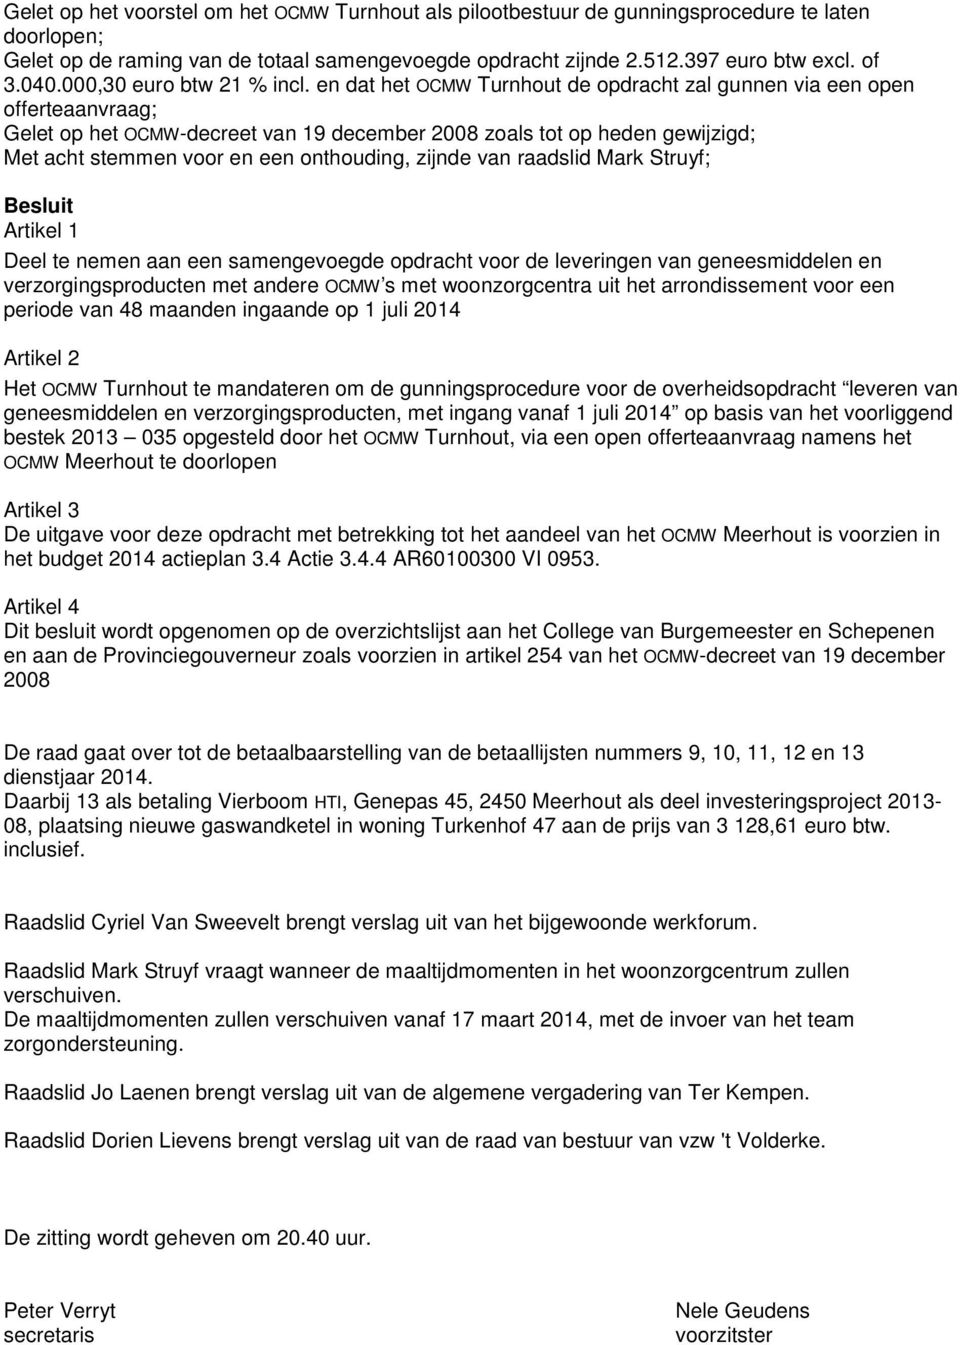 en dat het OCMW Turnhout de opdracht zal gunnen via een open offerteaanvraag; Gelet op het OCMW-decreet van 19 december 2008 zoals tot op heden gewijzigd; Met acht stemmen voor en een onthouding,